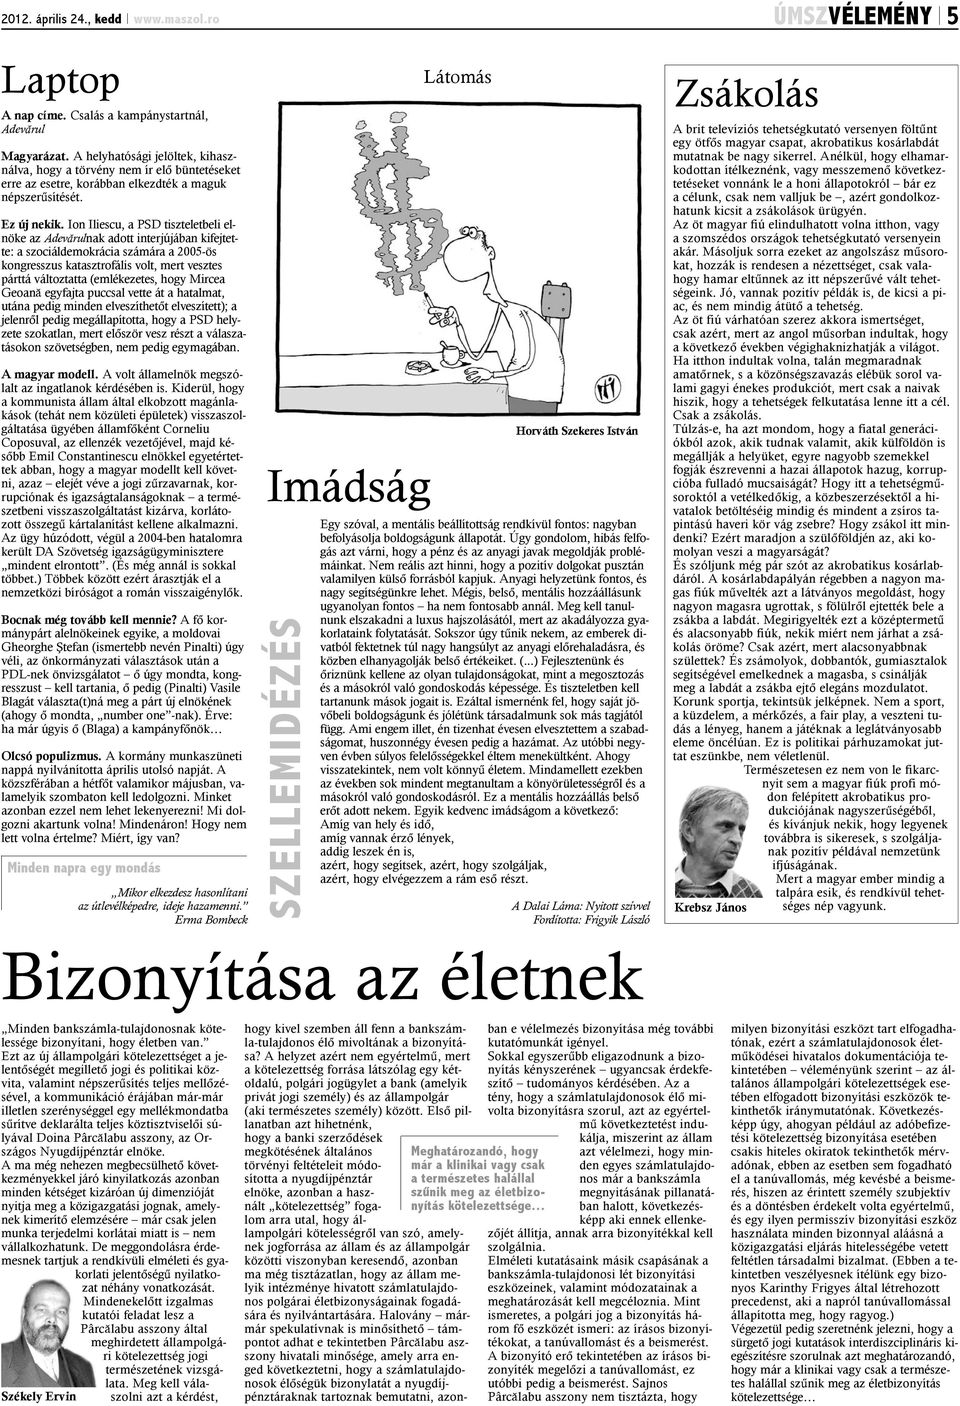 Ion Iliescu, a PSD tiszteletbeli elnöke az Adevãrulnak adott interjújában kifejtette: a szociáldemokrácia számára a 2005-ös kongresszus katasztrofális volt, mert vesztes párttá változtatta